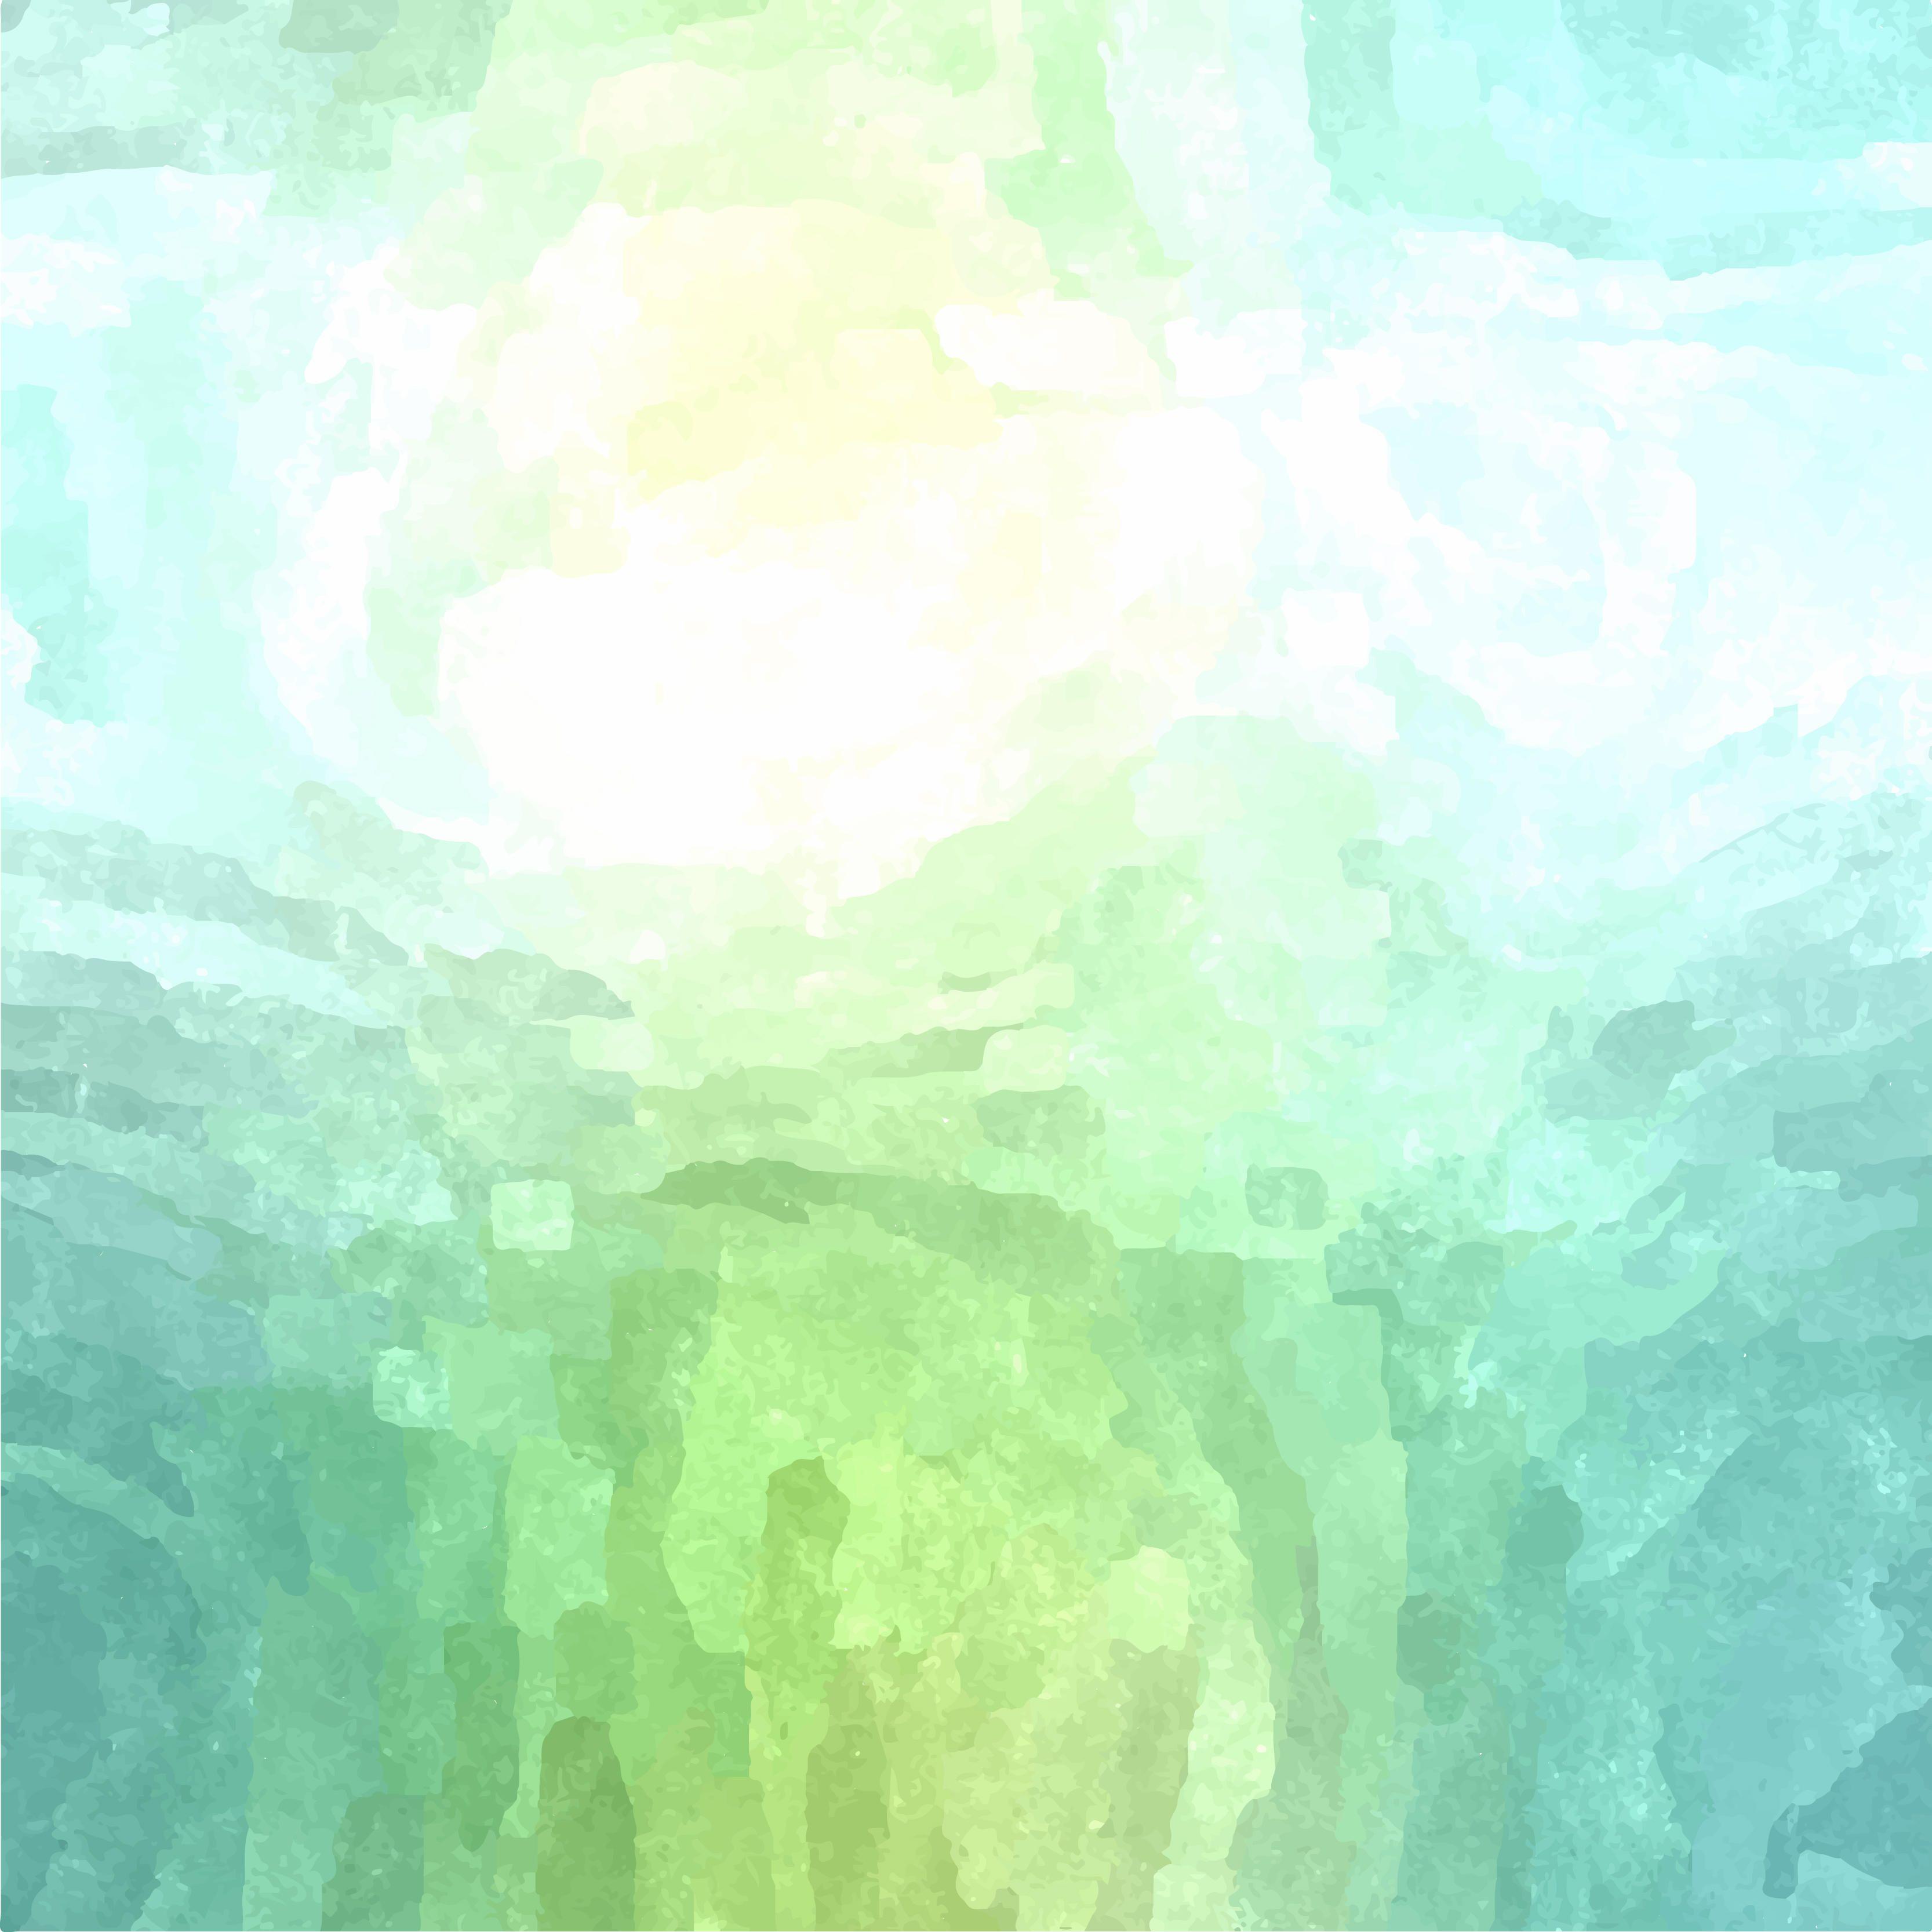 Watercolor Background Vectors. Download Free Vector Art